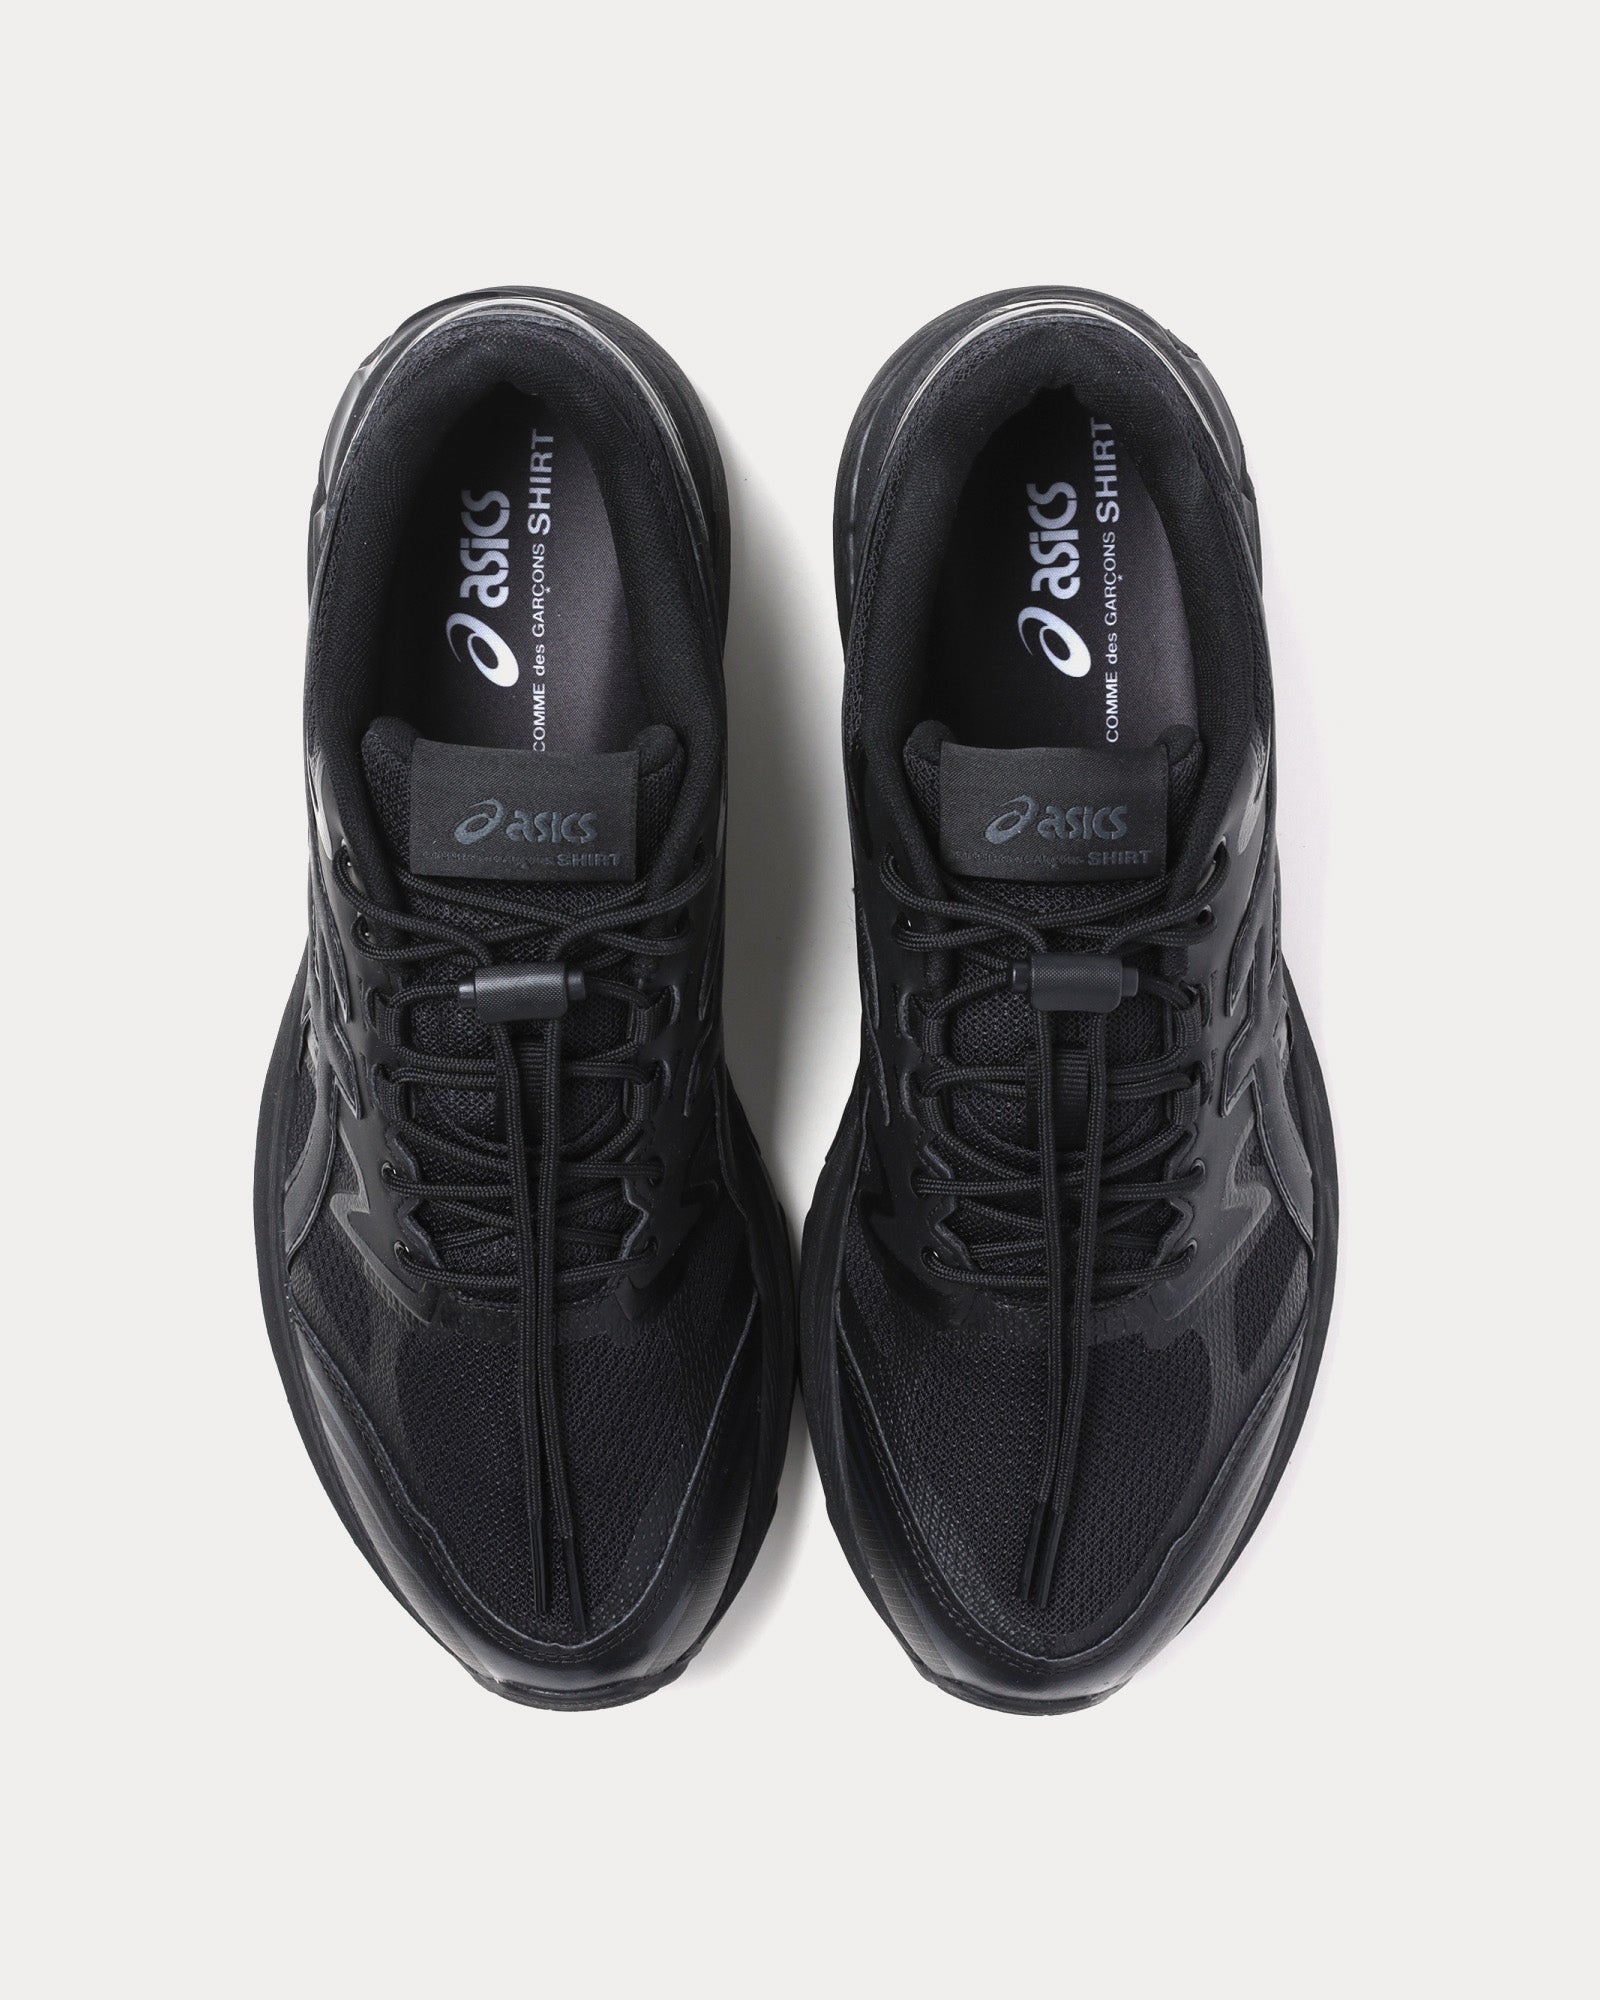 Asics x CDG Shirt - Gel-Terrain Black Low Top Sneakers